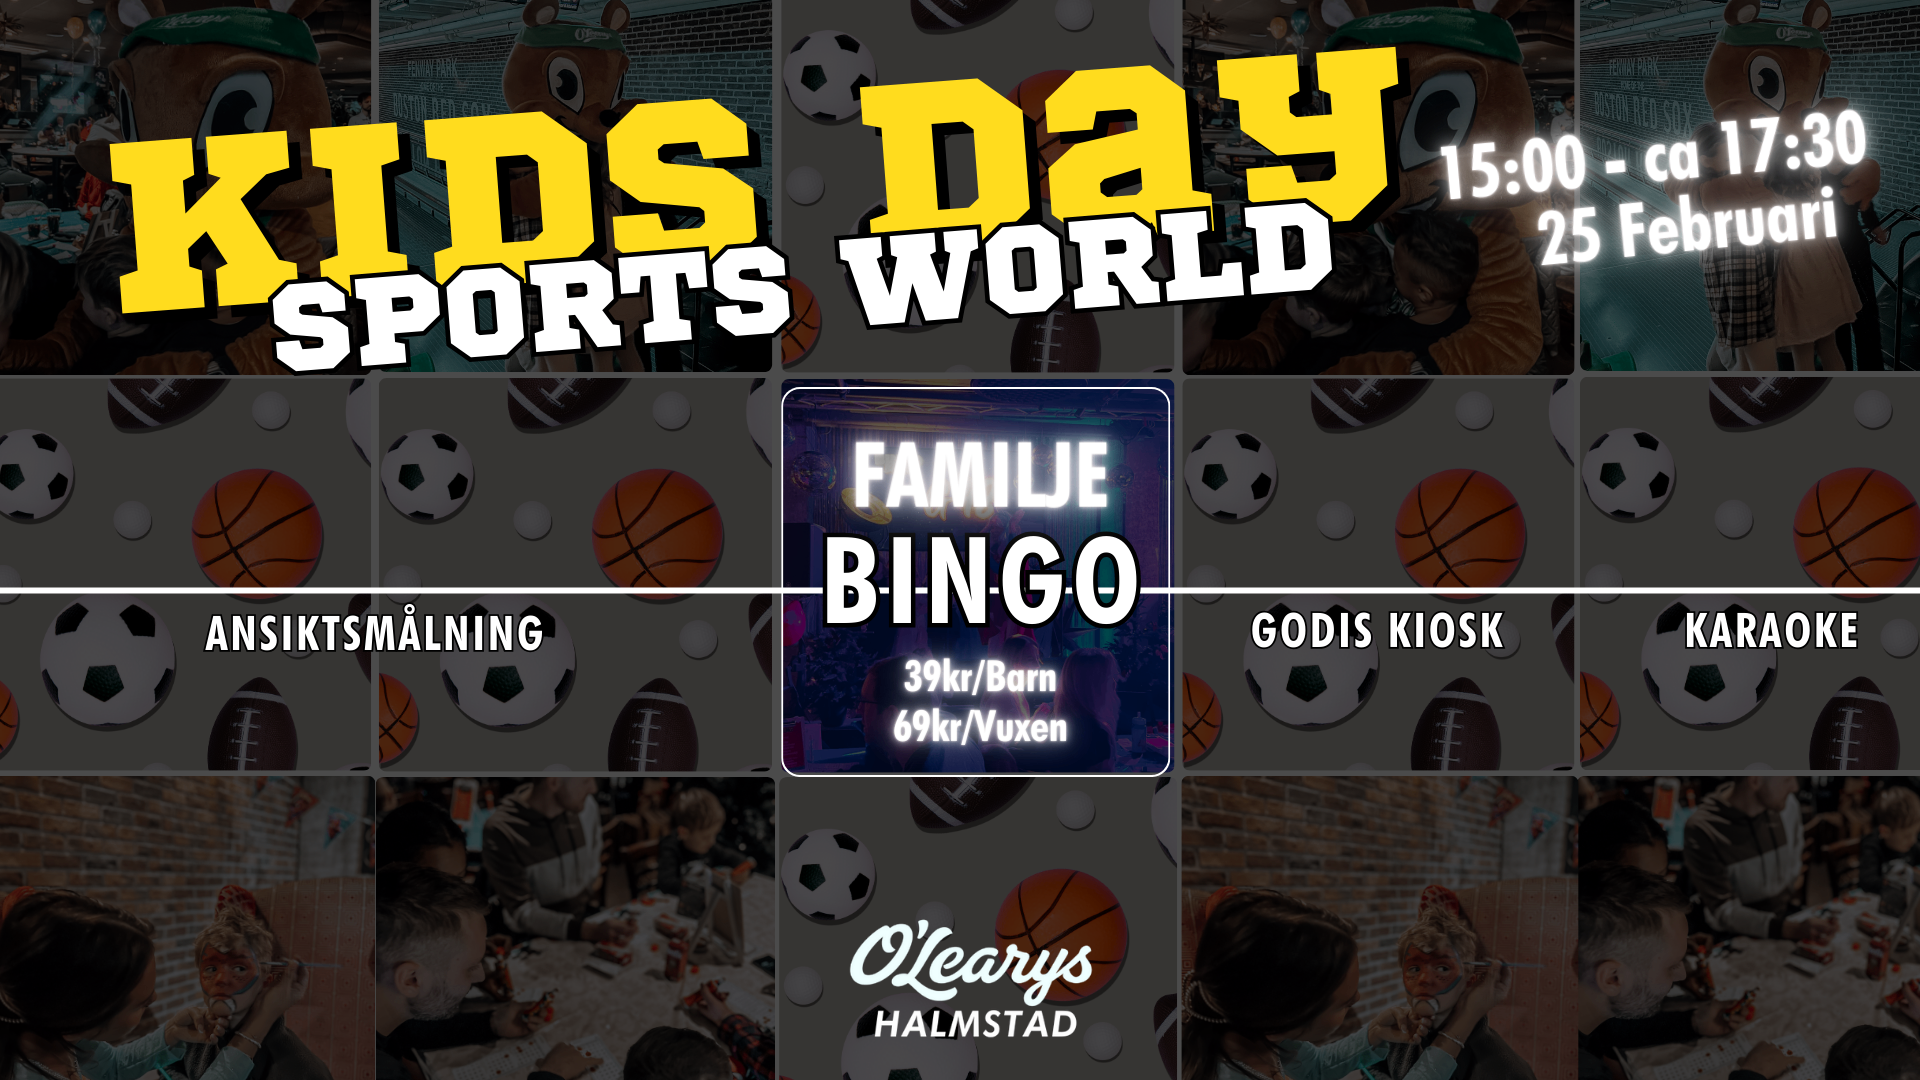 Bildbeskrivning saknas för evenemanget: Kids Day Sports World